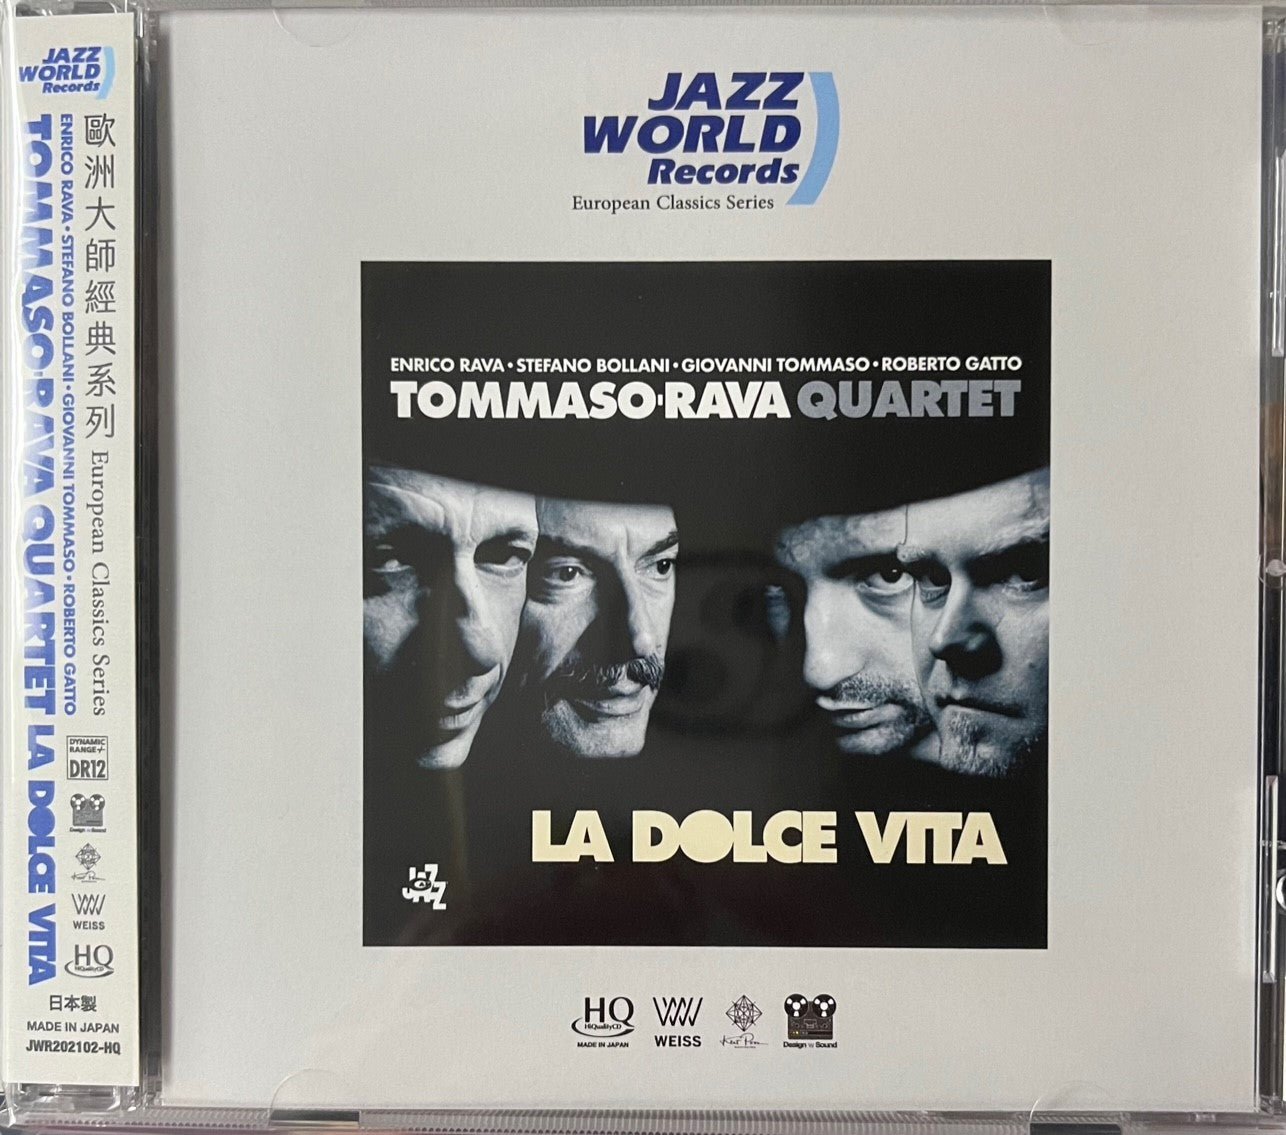 TOMMASO, RAVA QUARTET - LA DOLCE VITA (HQCD) CD